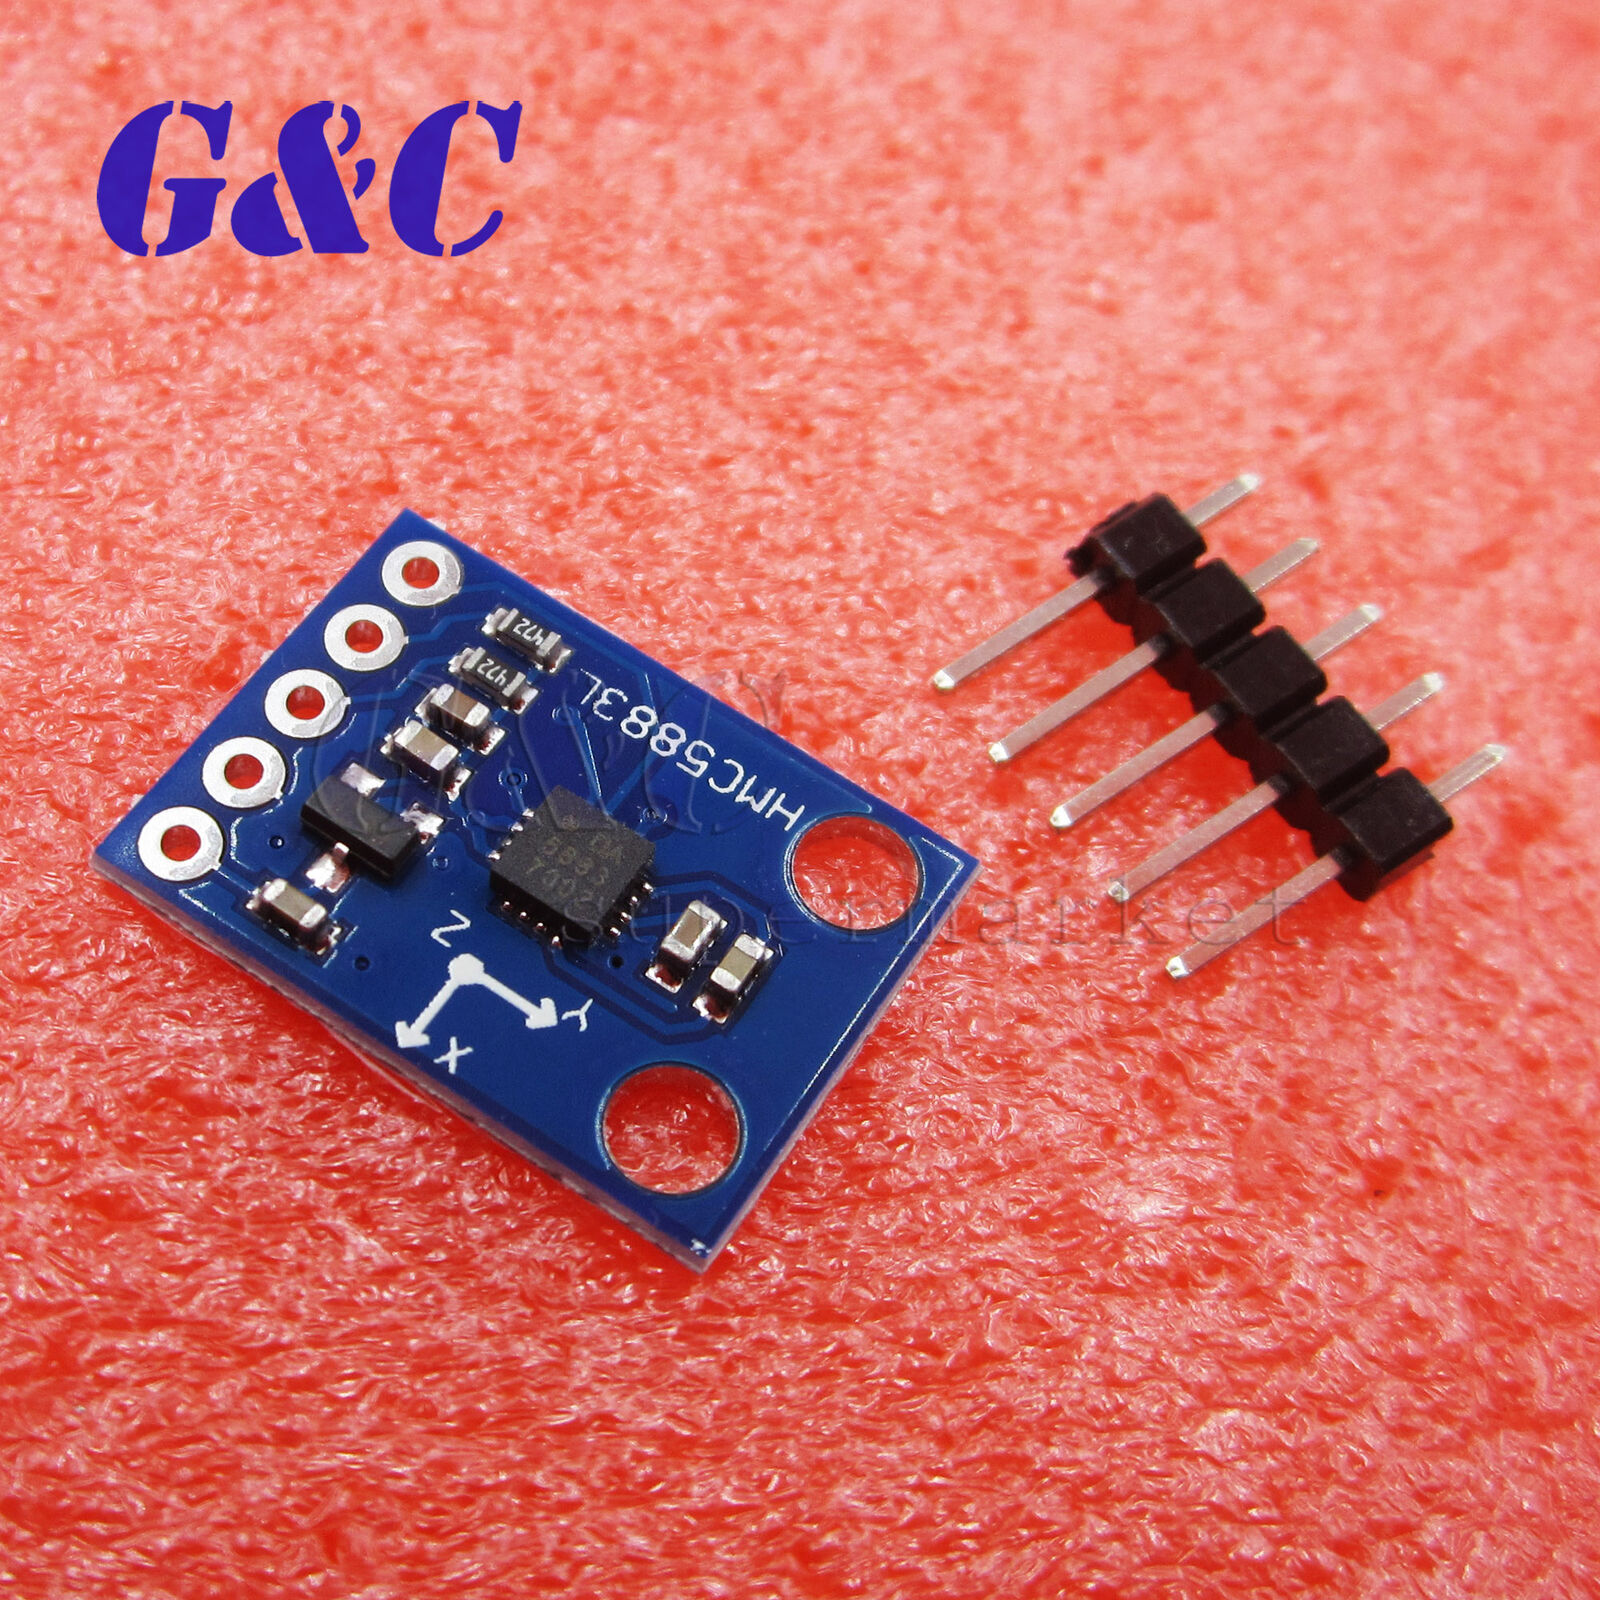 GY-273 HMC5883L Triple Axis Compass Magnetometer Sensor Module For Arduino 3V-5V